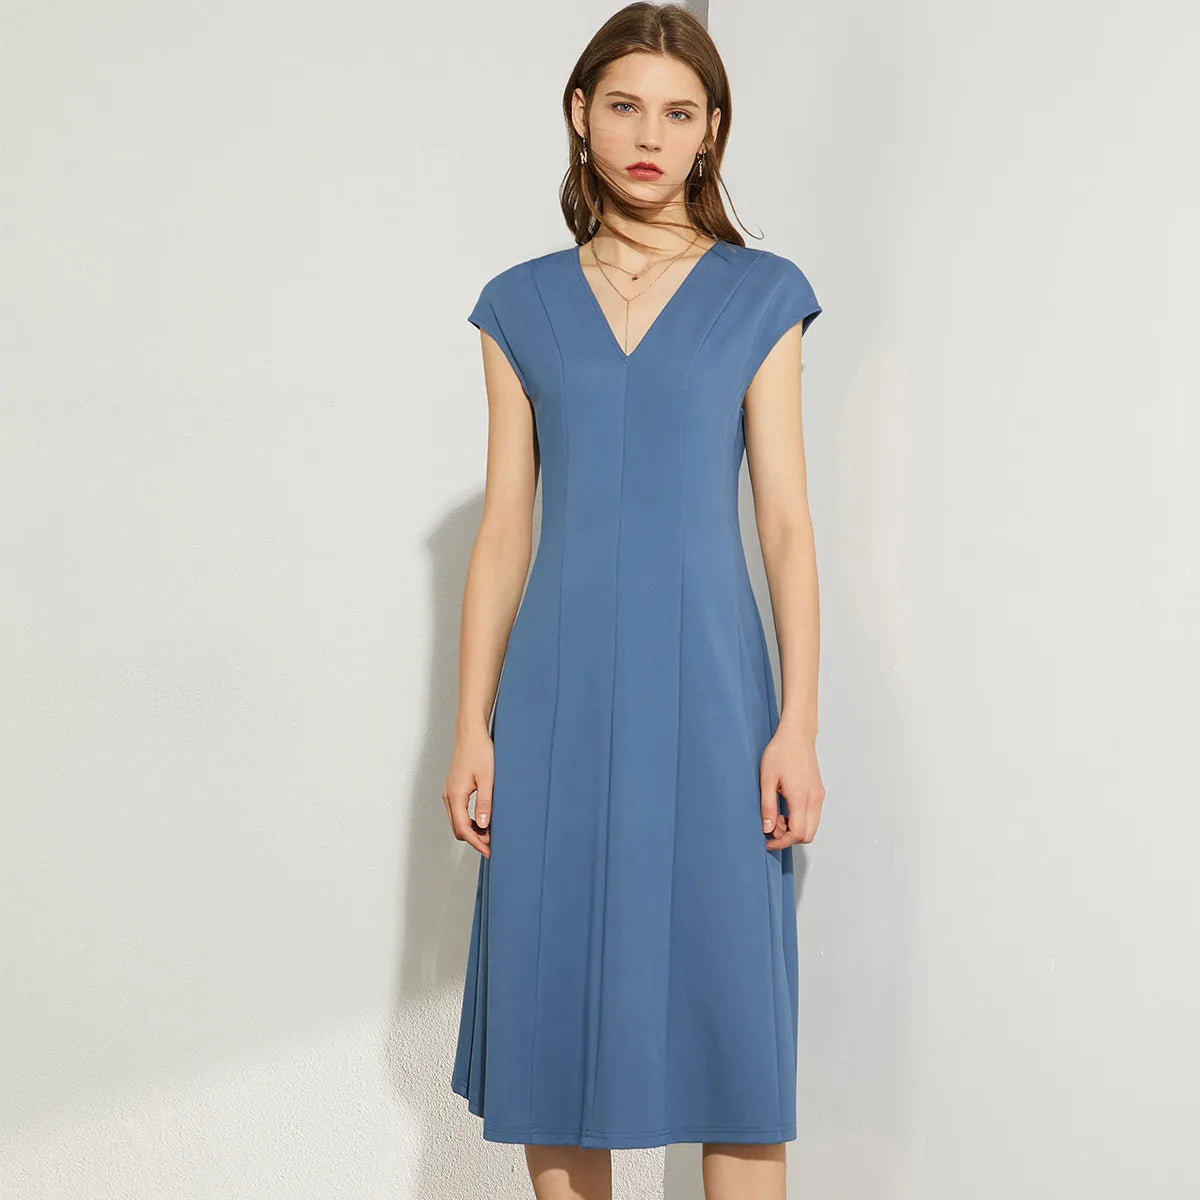 Minimalism Sleeveless Dress - BEYOND FASHION